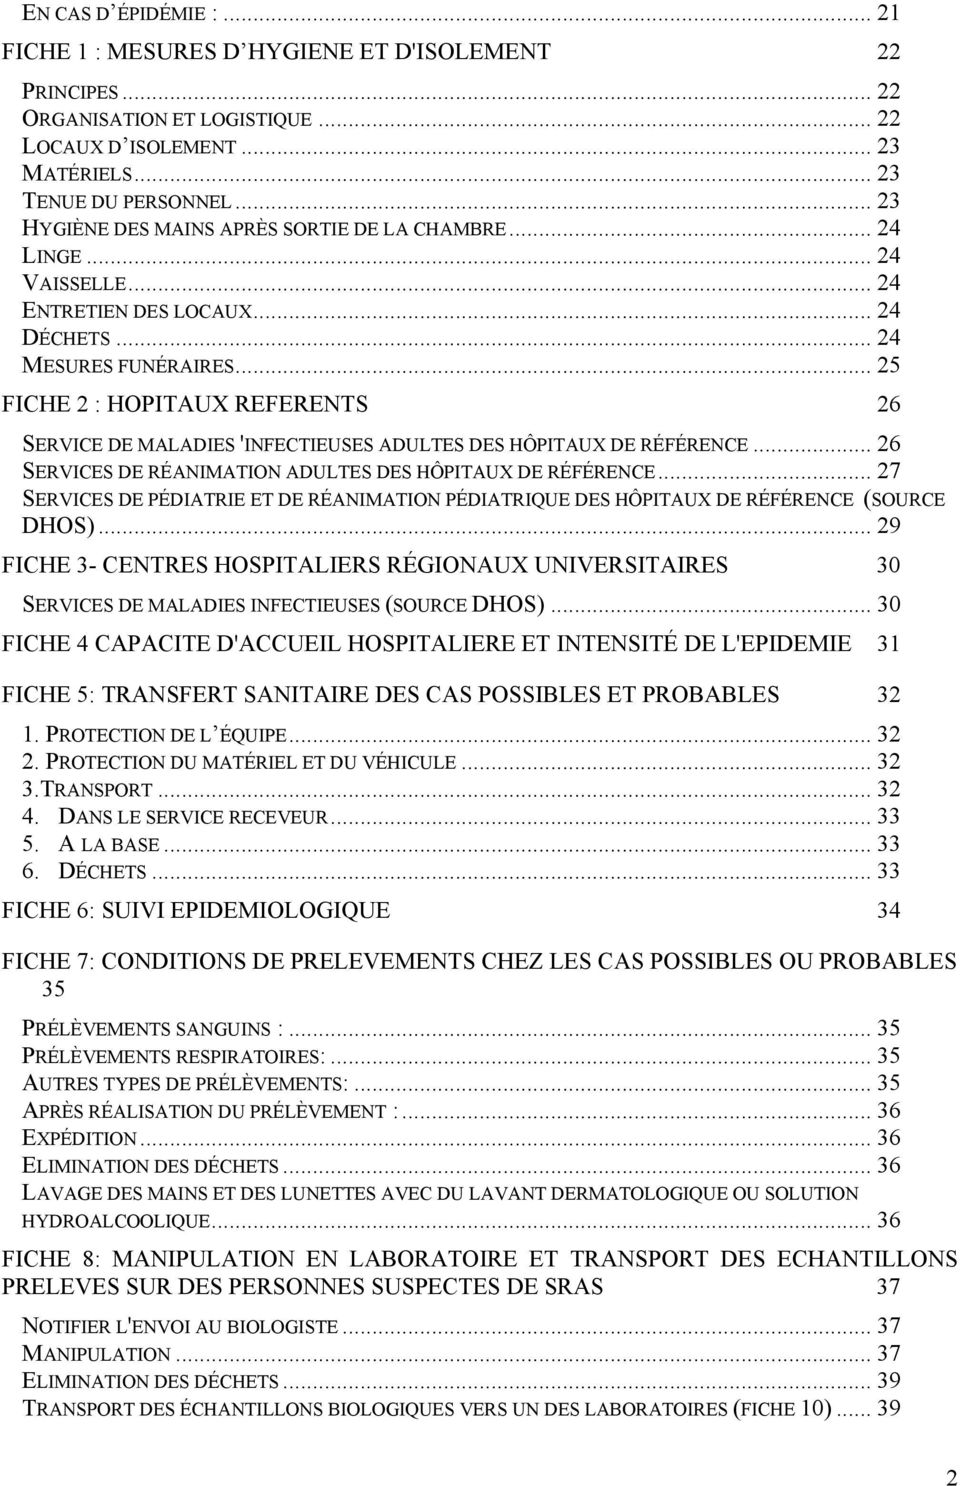 .. 25 FICHE 2 : HOPITAUX REFERENTS 26 SERVICE DE MALADIES 'INFECTIEUSES ADULTES DES HÔPITAUX DE RÉFÉRENCE... 26 SERVICES DE RÉANIMATION ADULTES DES HÔPITAUX DE RÉFÉRENCE.